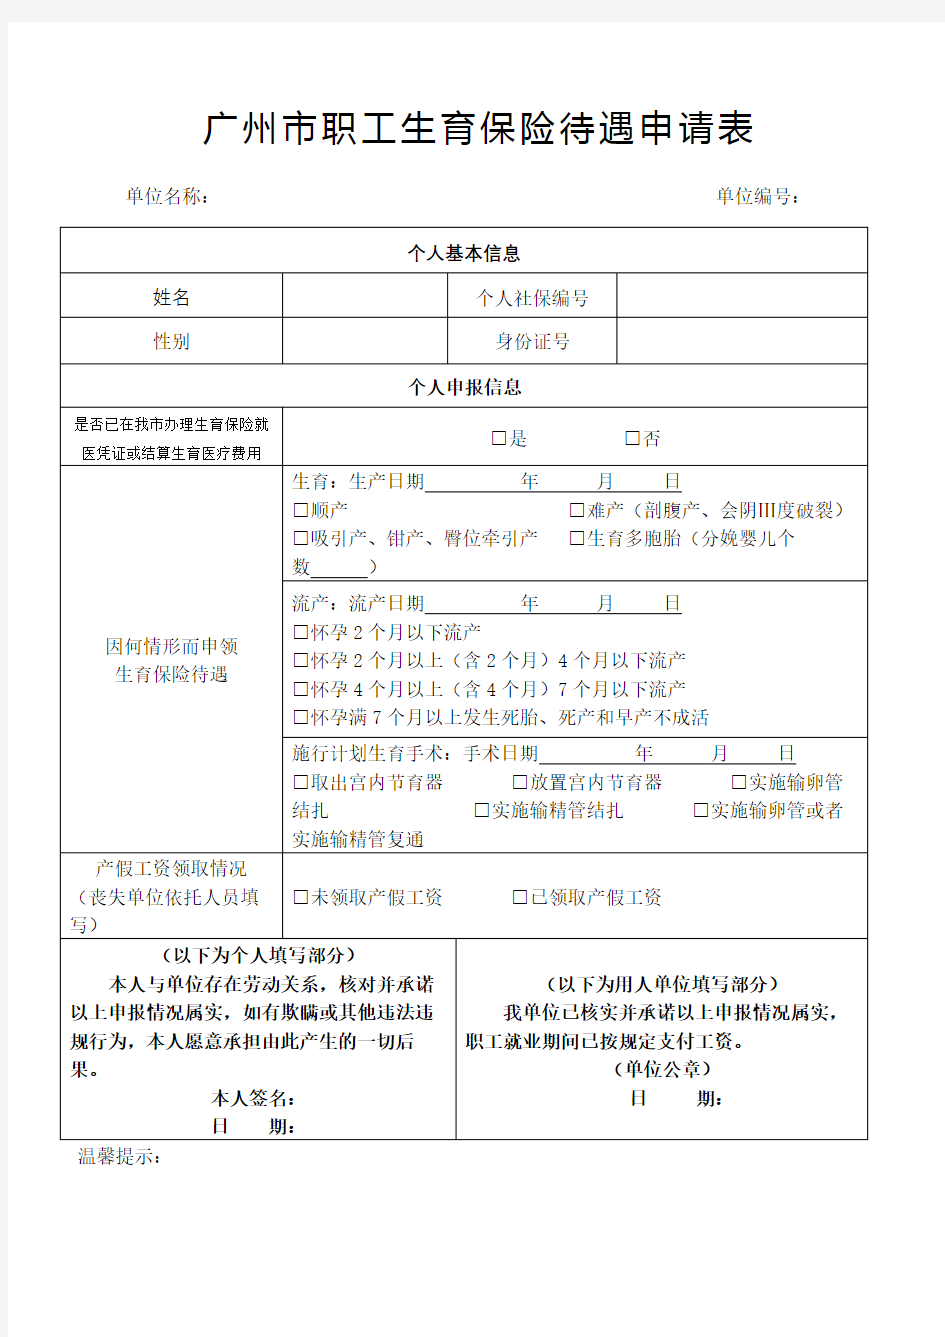 广州市职工生育保险待遇申请表完整版